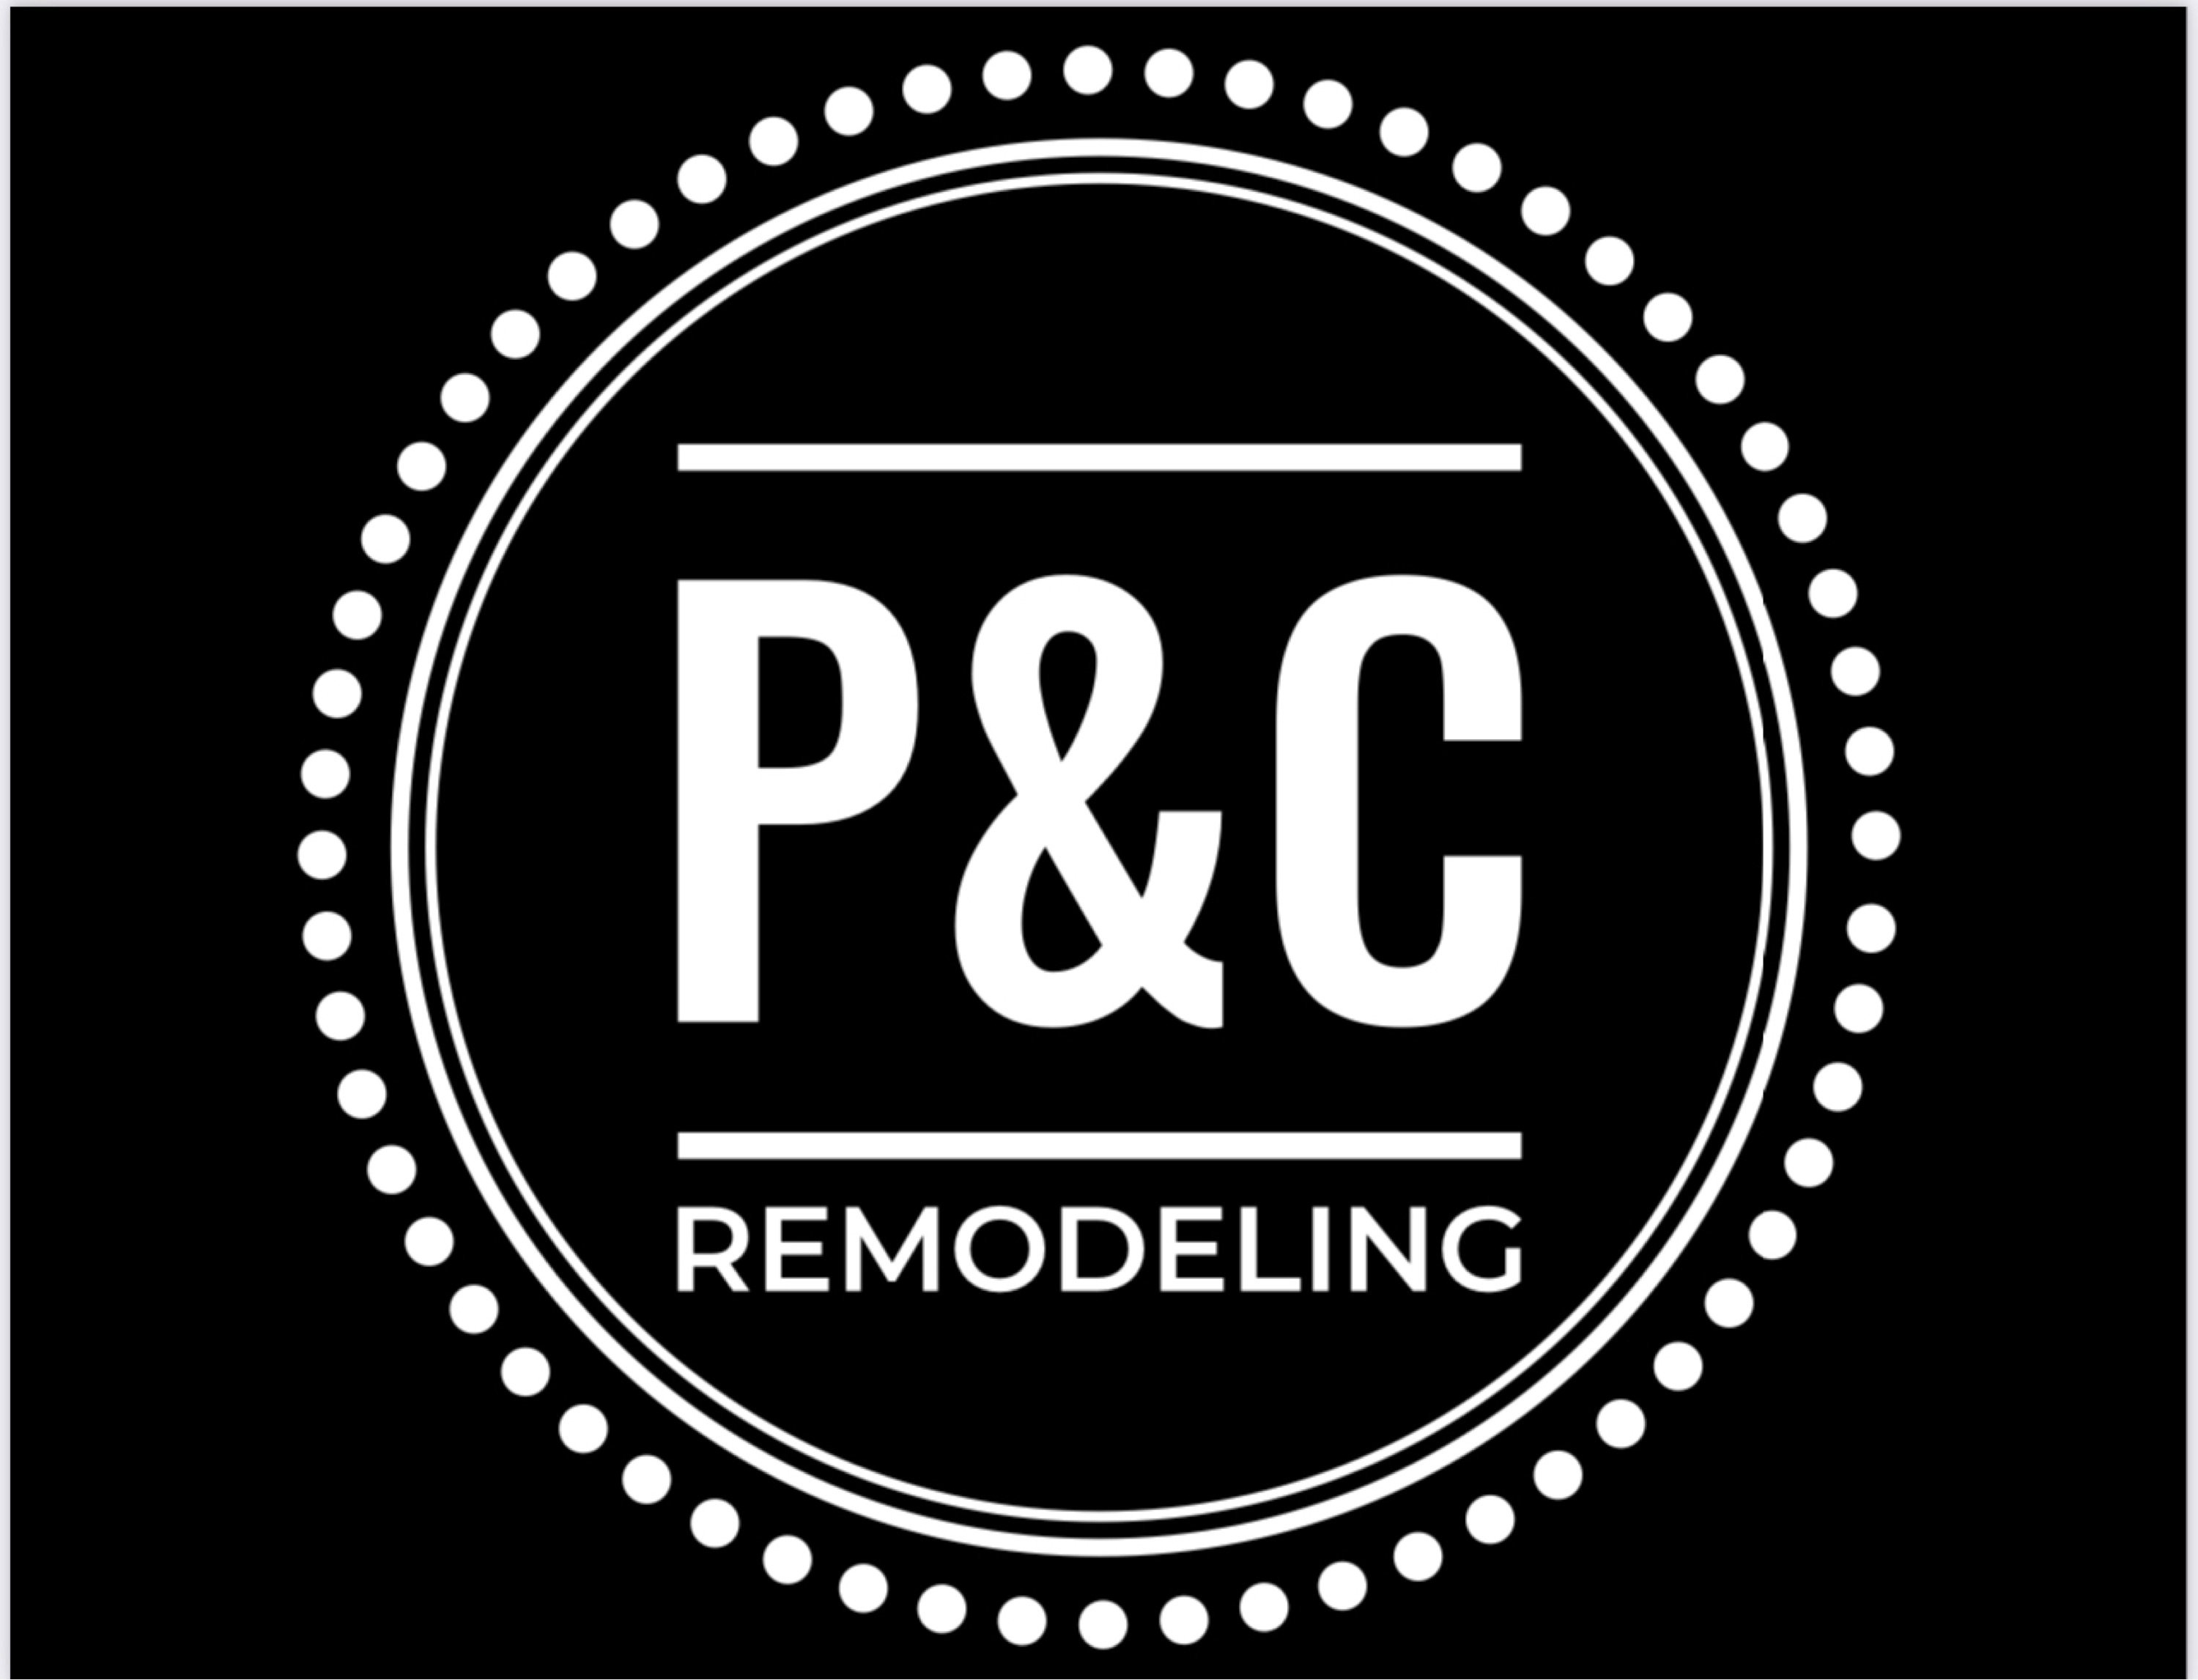 P&C Remodeling Logo